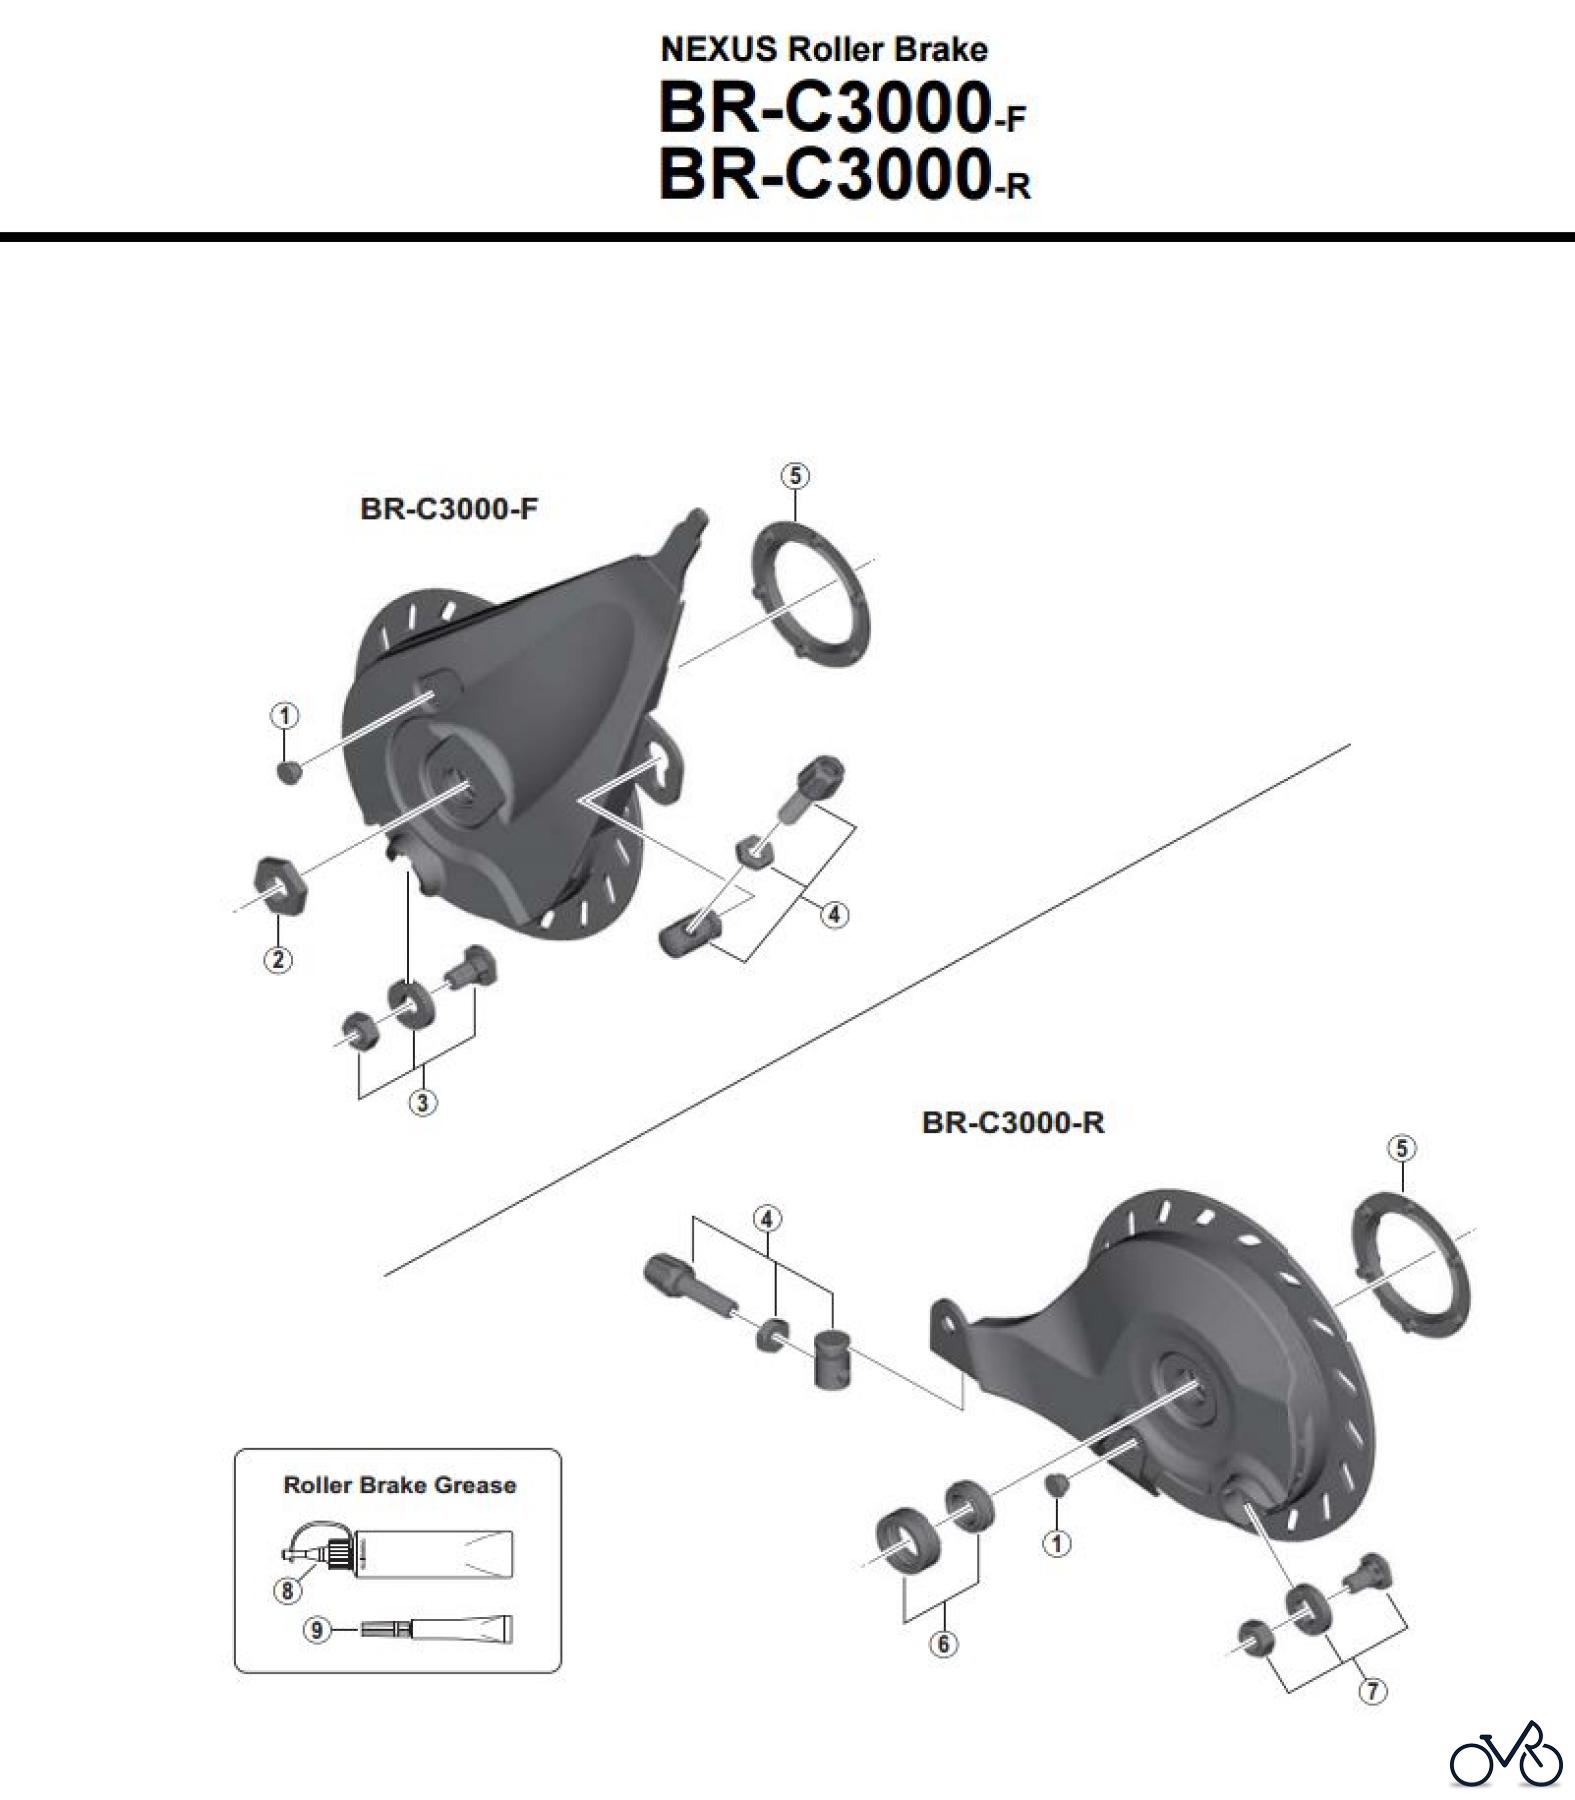  Shimano BR Brake - Bremse BR-C3000-F_R -3751A NEXUS Roller Brak